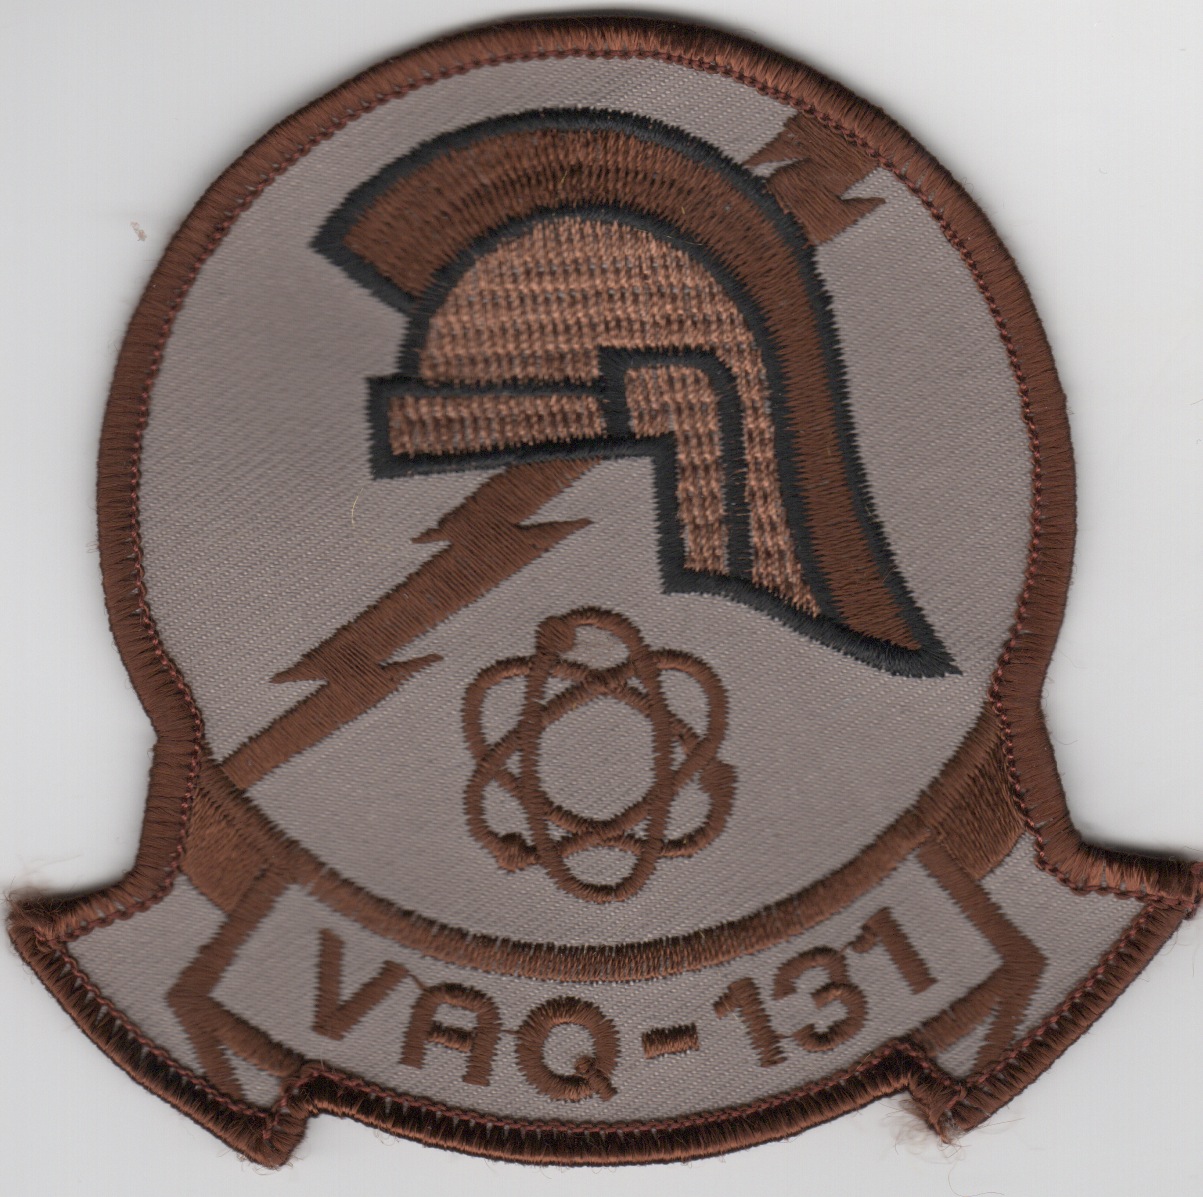 AV8R Stuff - VAQ-131 Patches